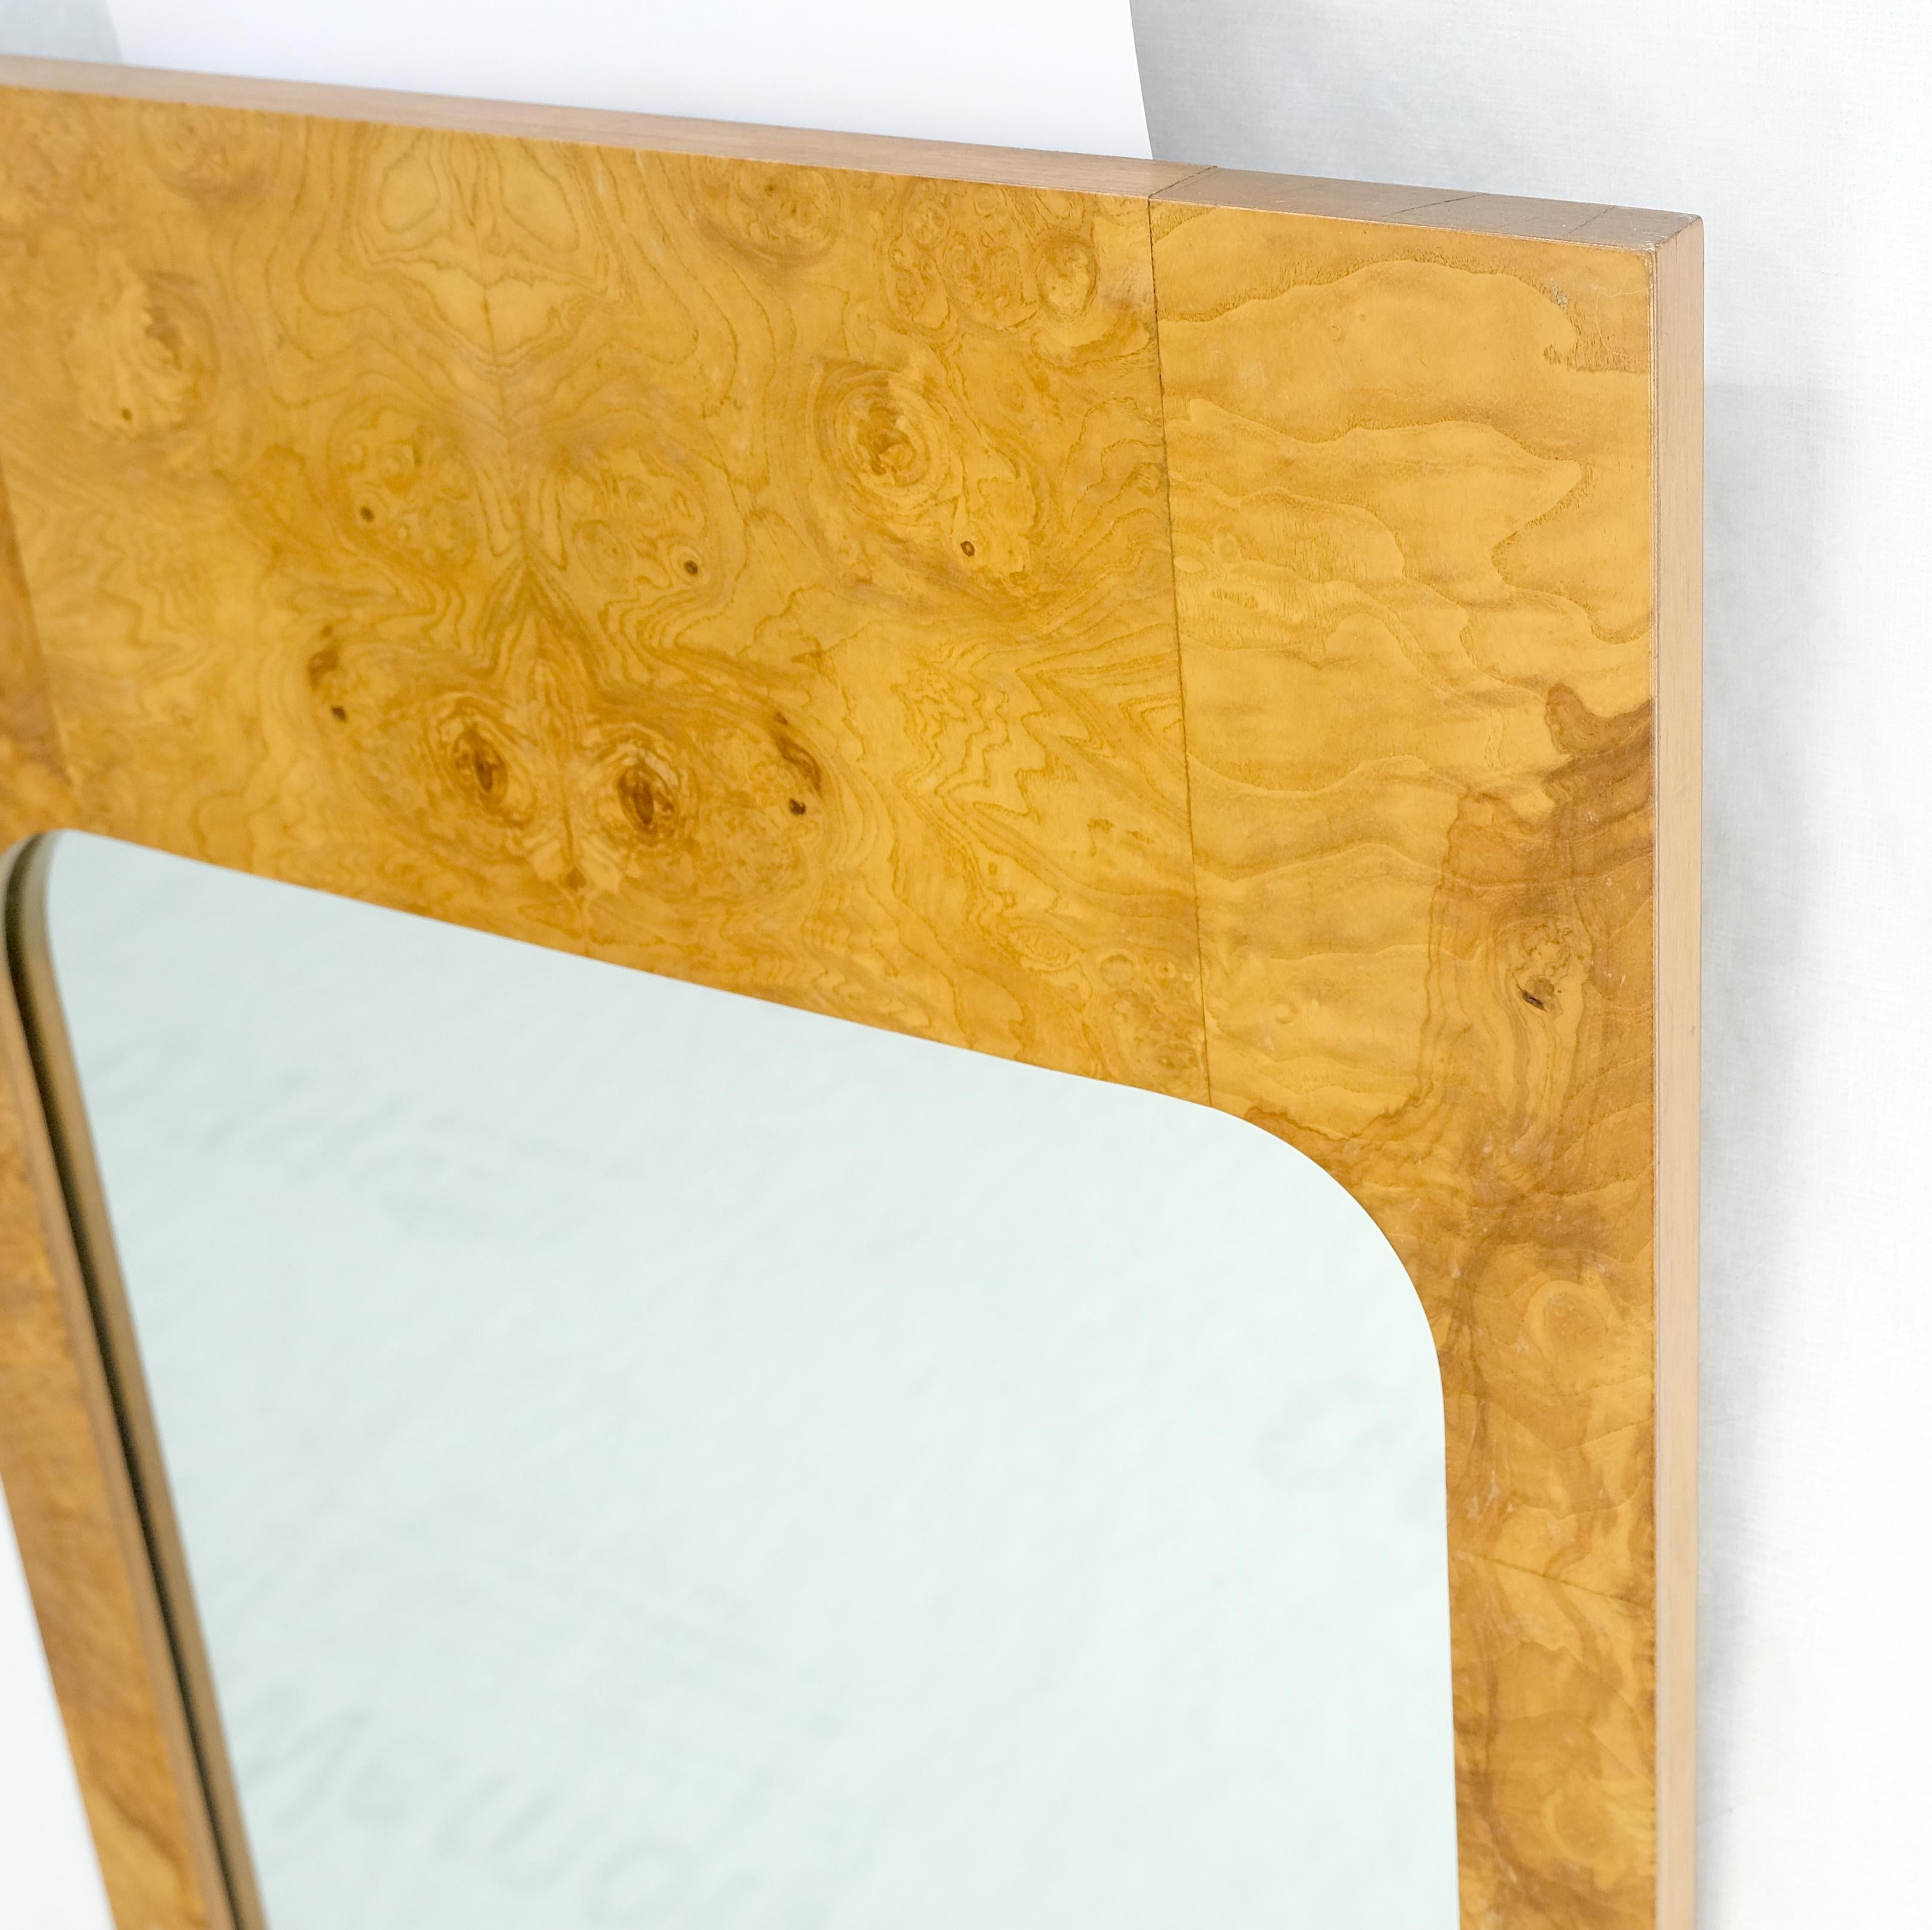 ¡Pareja de espejos de pared rectangulares Milo Baughman de mediados del siglo XX en nogal Burl MINT! Lacado en venta